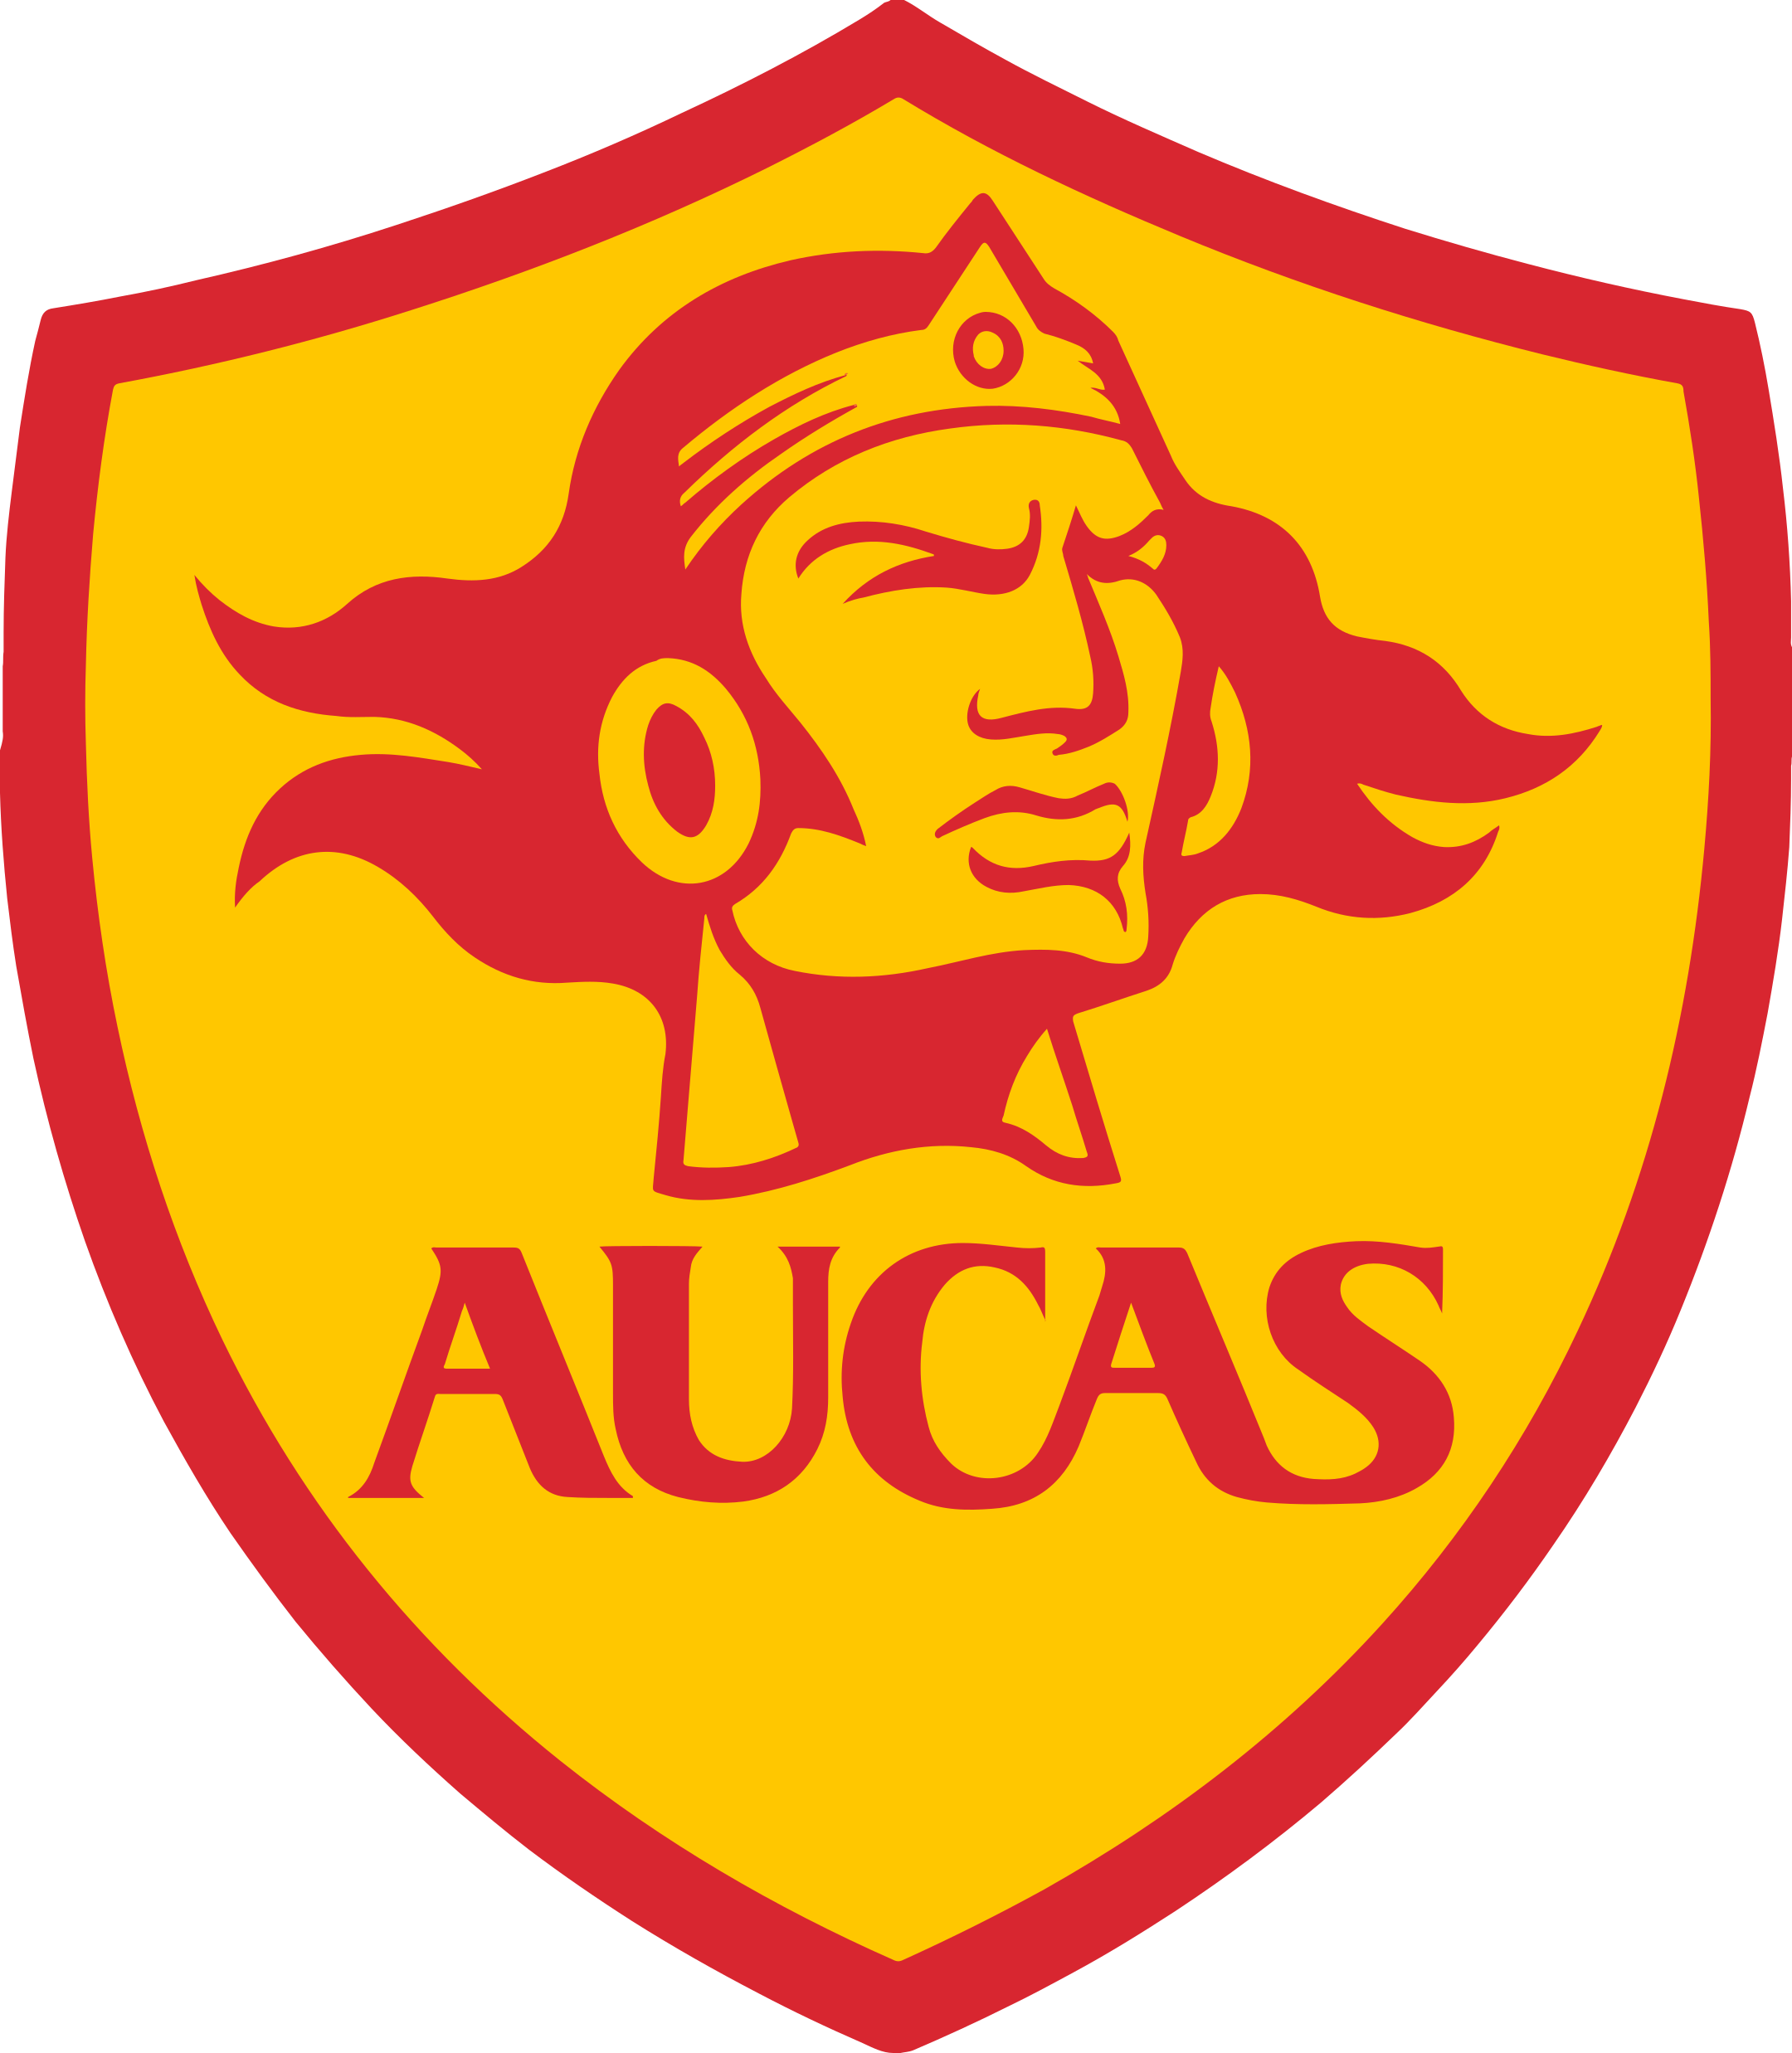 aucas logo 1 - S.D. Aucas Logo